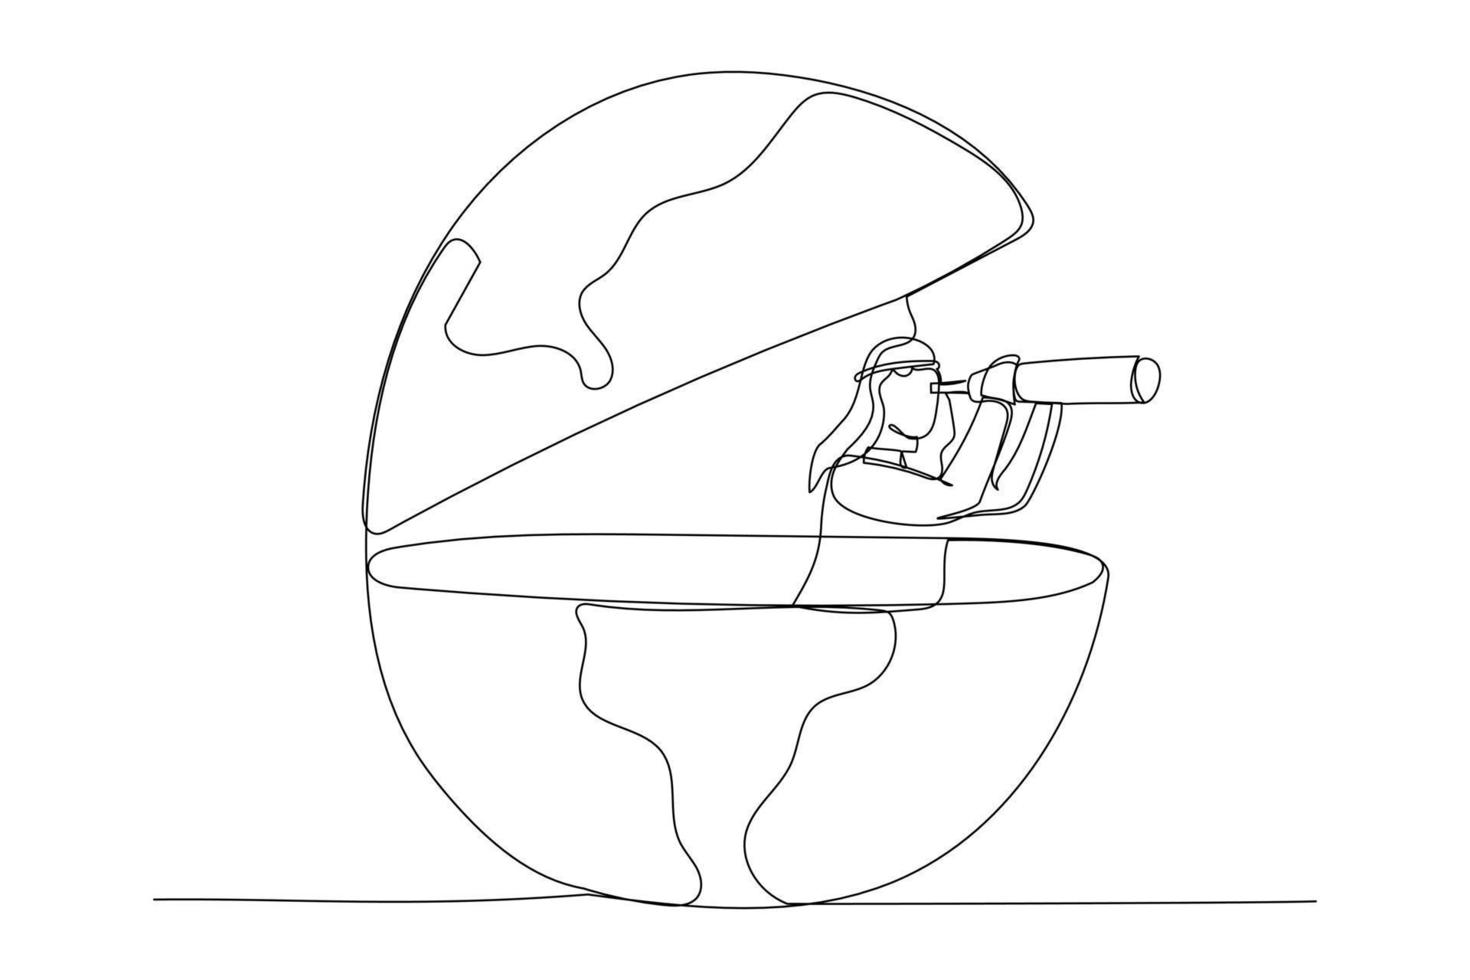 caricatura de hombre de negocios árabe globo abierto usando telescopio en busca de visión para una nueva oportunidad. trabajo o inversión, buscando un concepto de negocio en el extranjero. estilo de arte de línea continua única vector